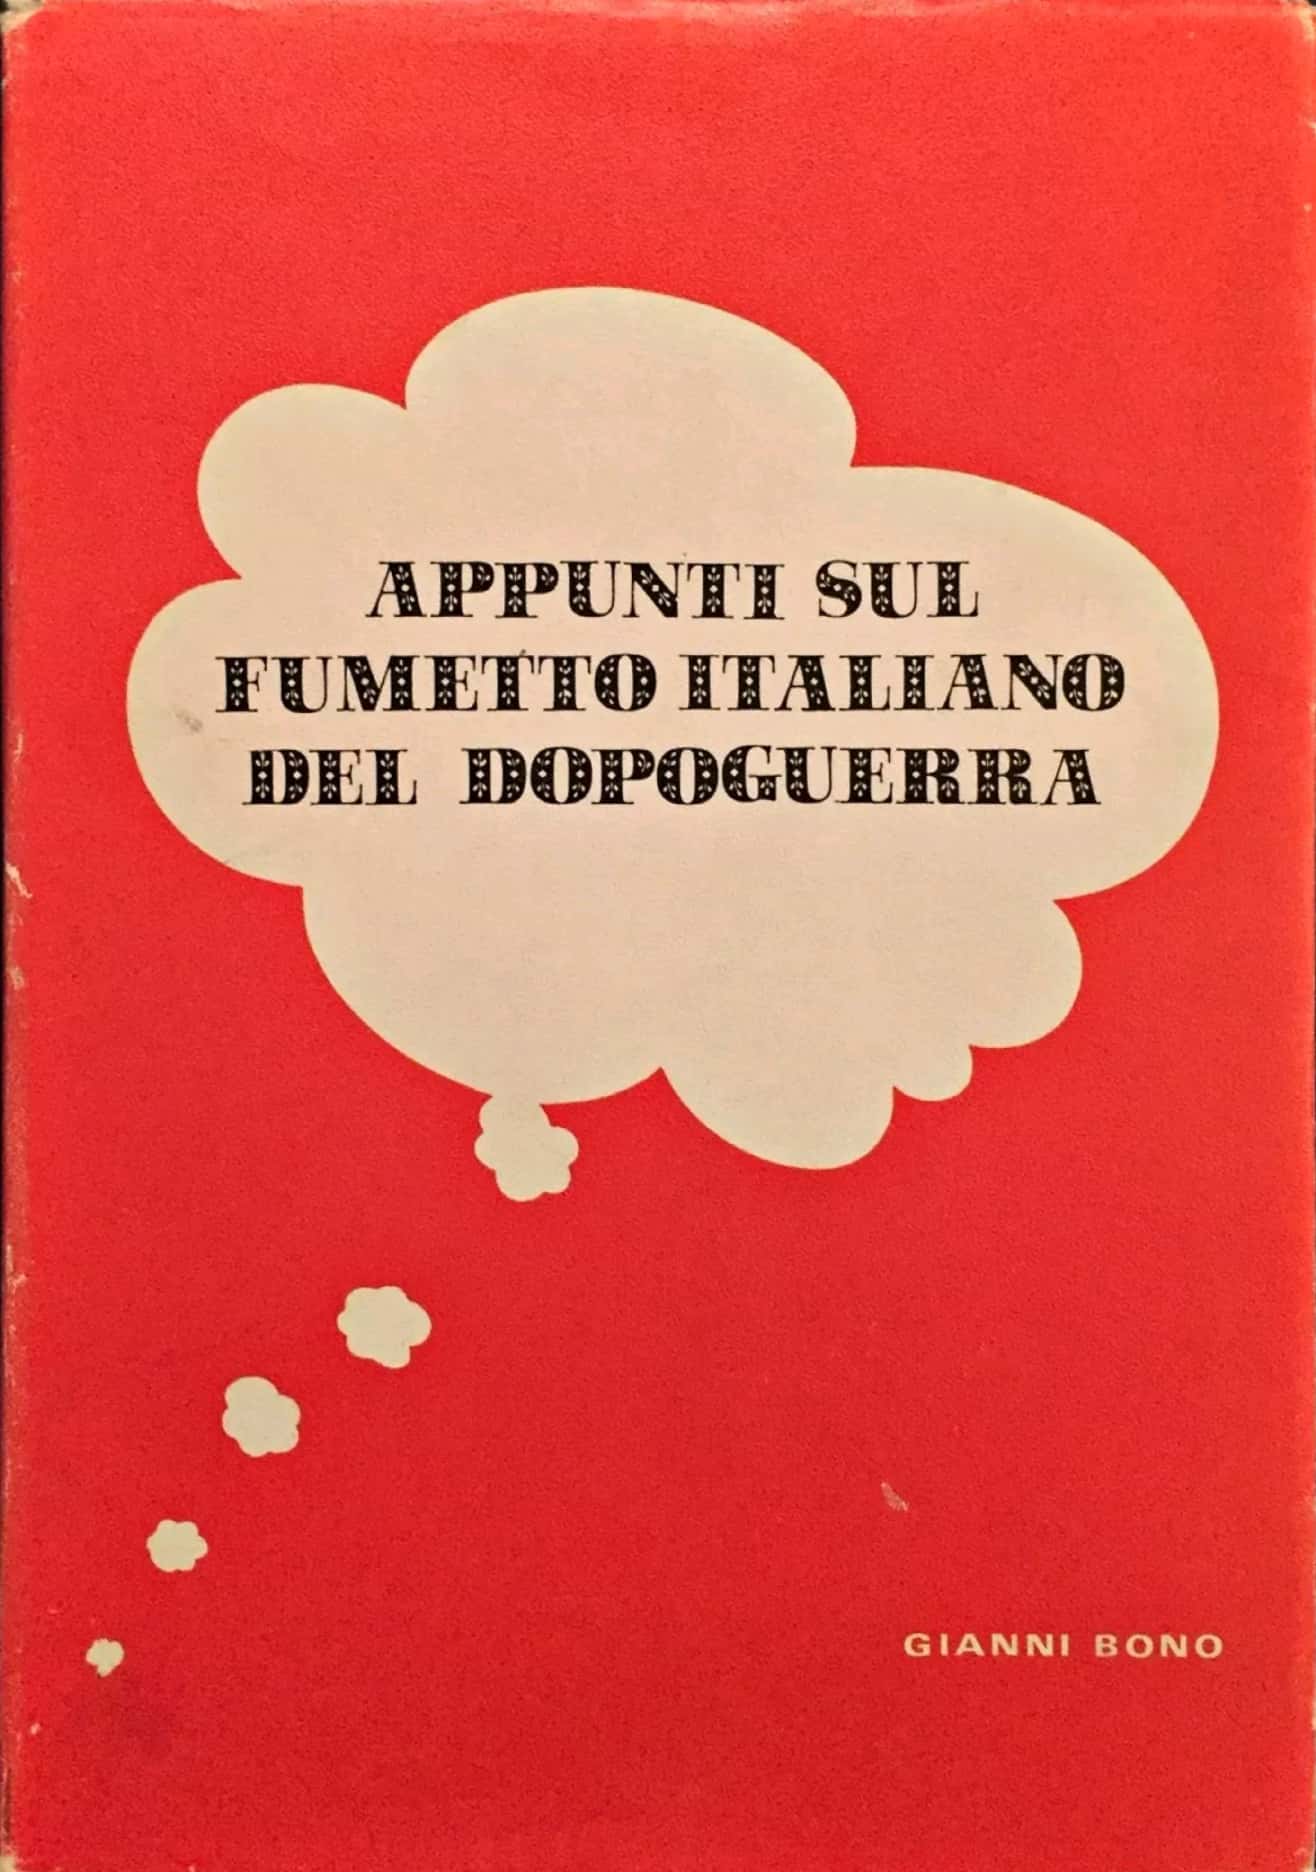 Da collezionare il raro “Appunti sul fumetto italiano del dopoguerra”!